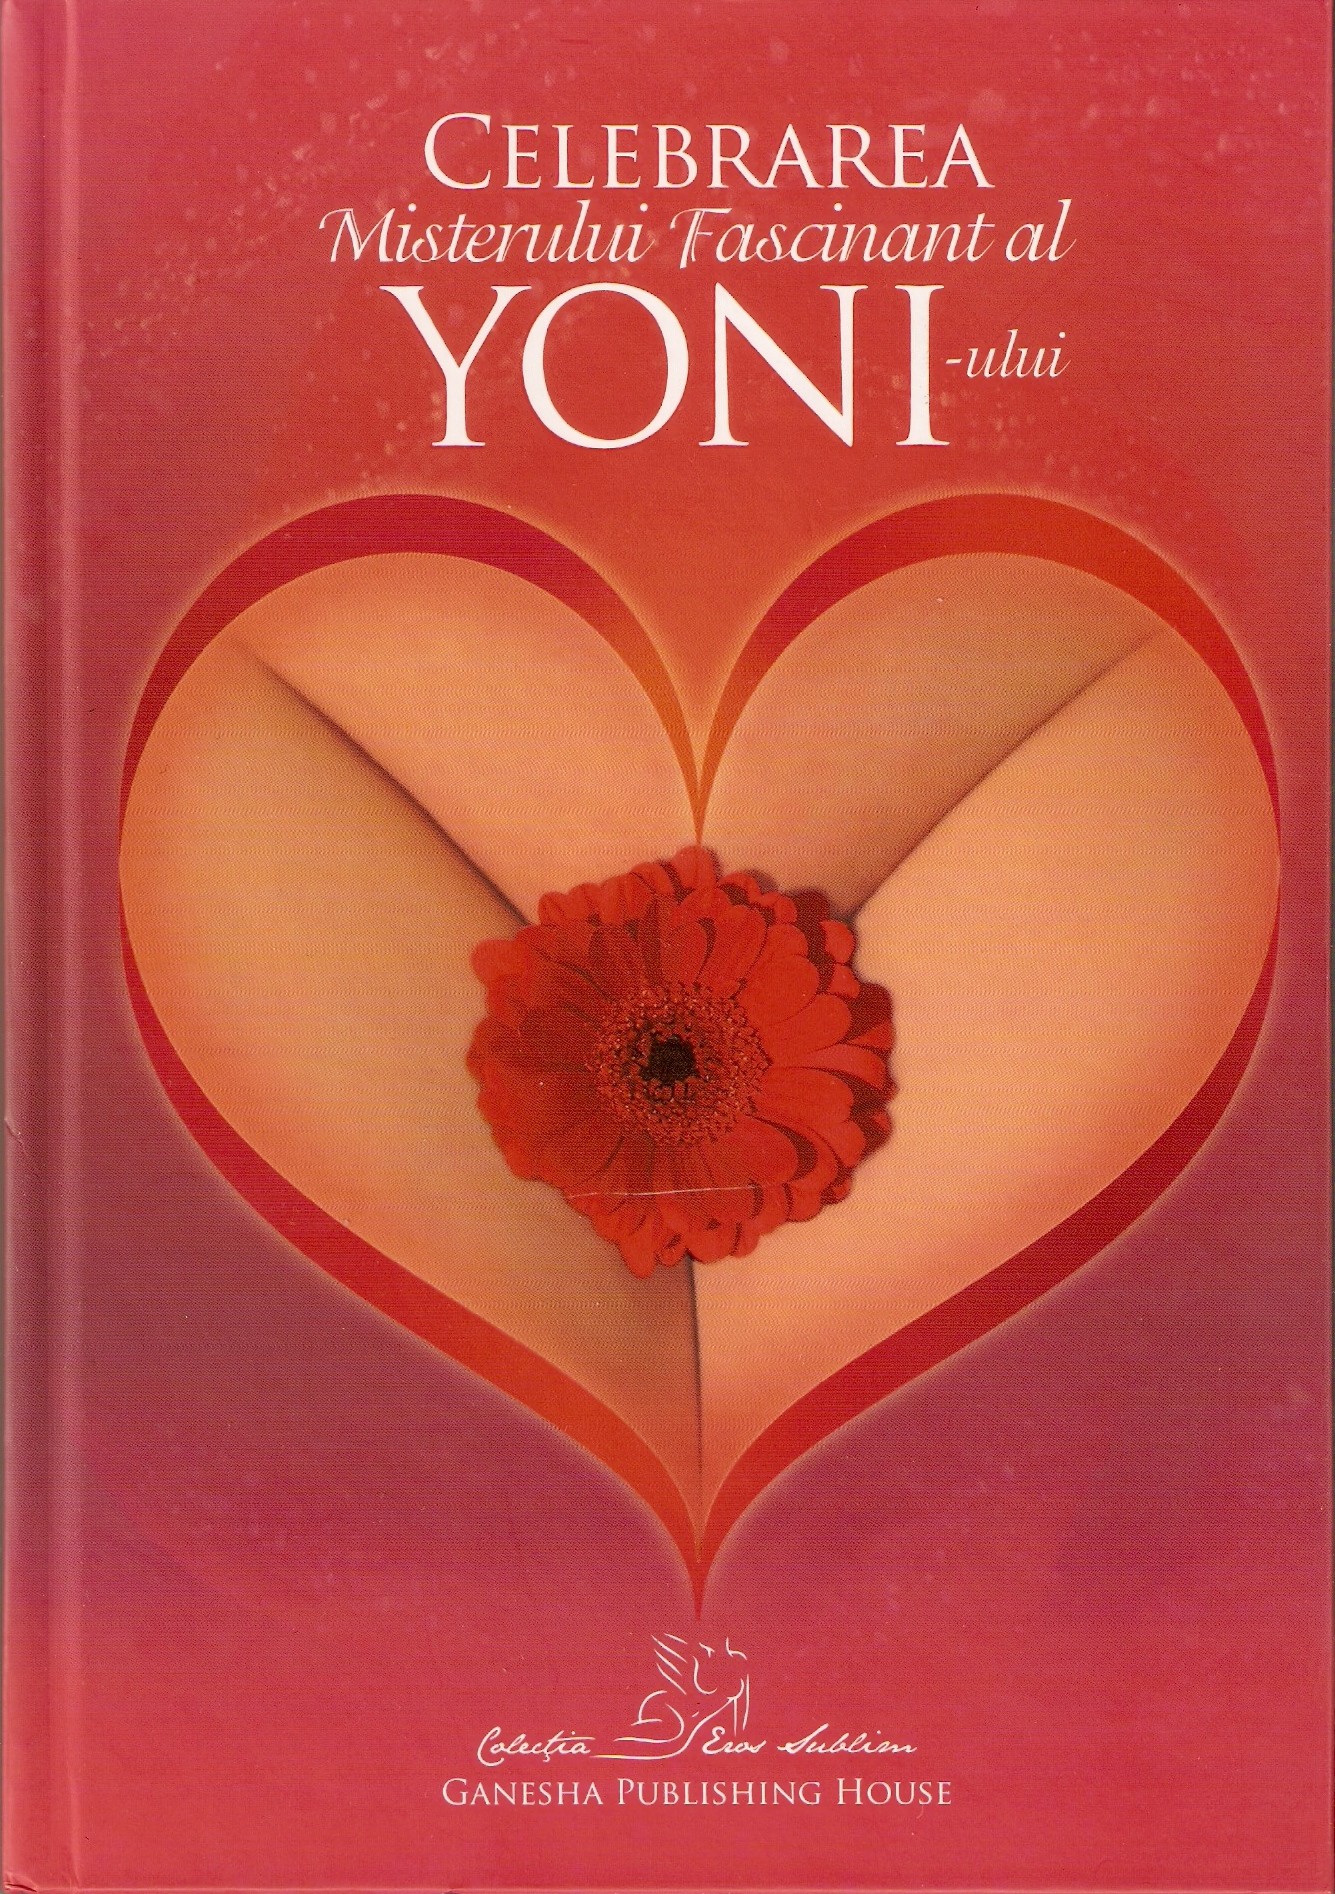 Celebrarea misterului fascinant al yoni-ului